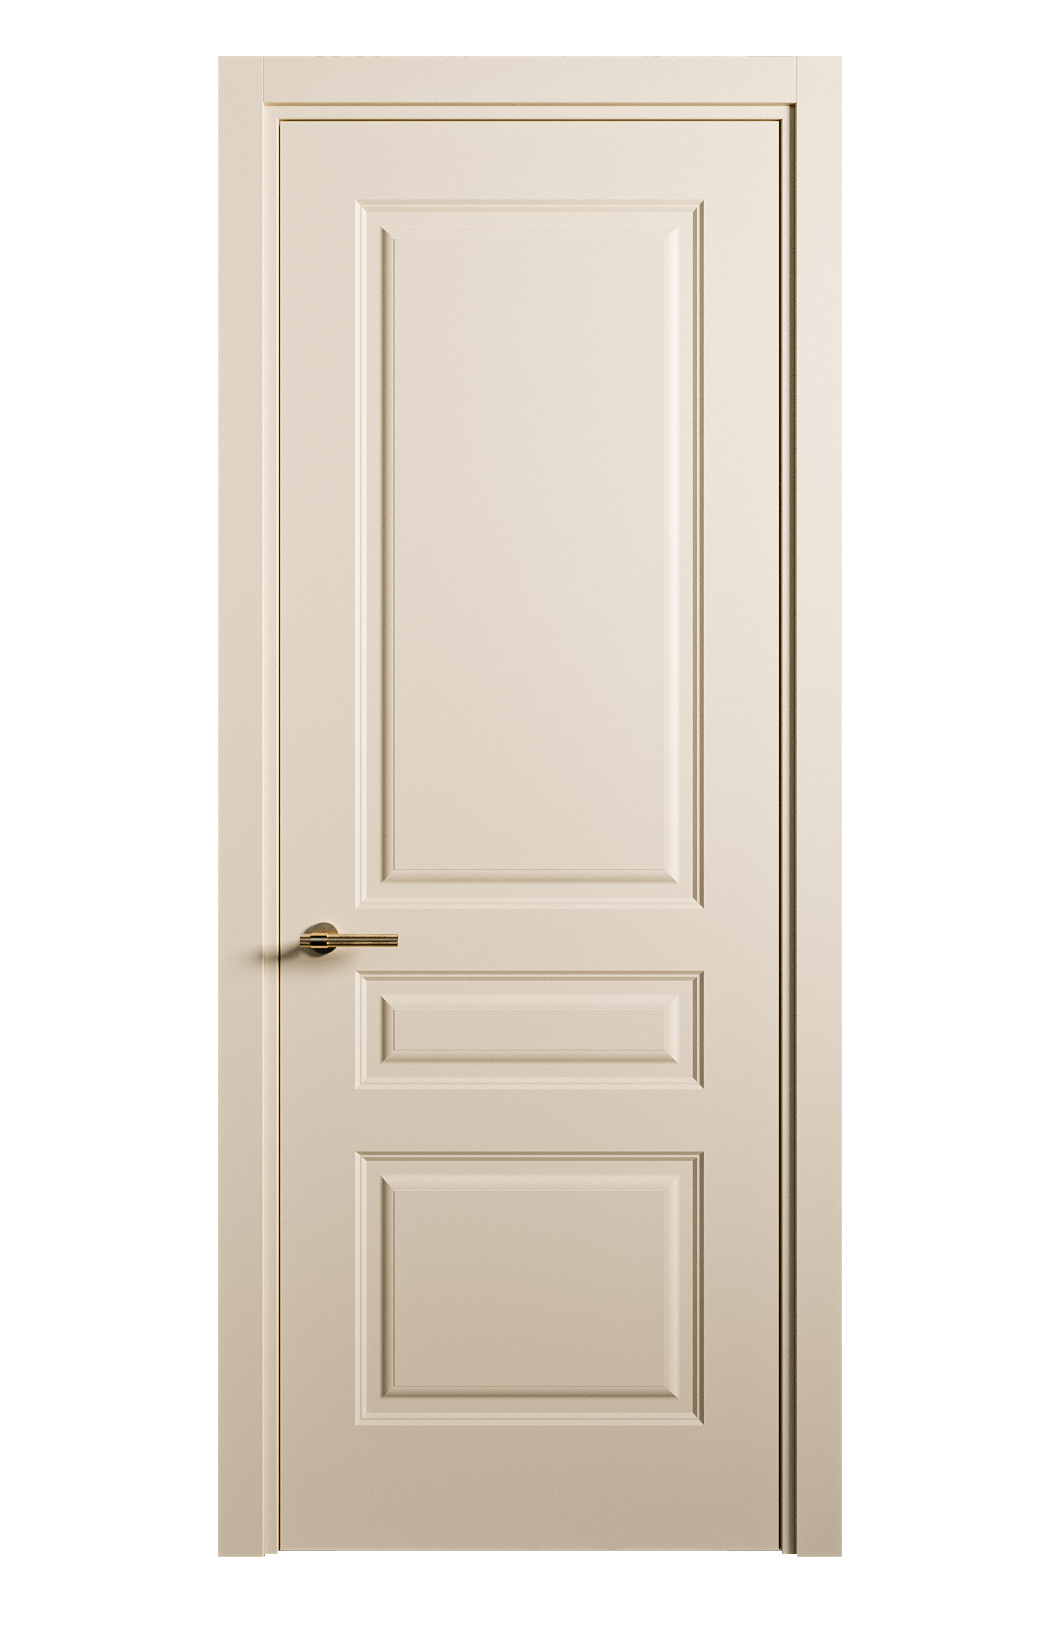 Межкомнатная дверь Вита-2 глухая эмаль ral 1015 26384